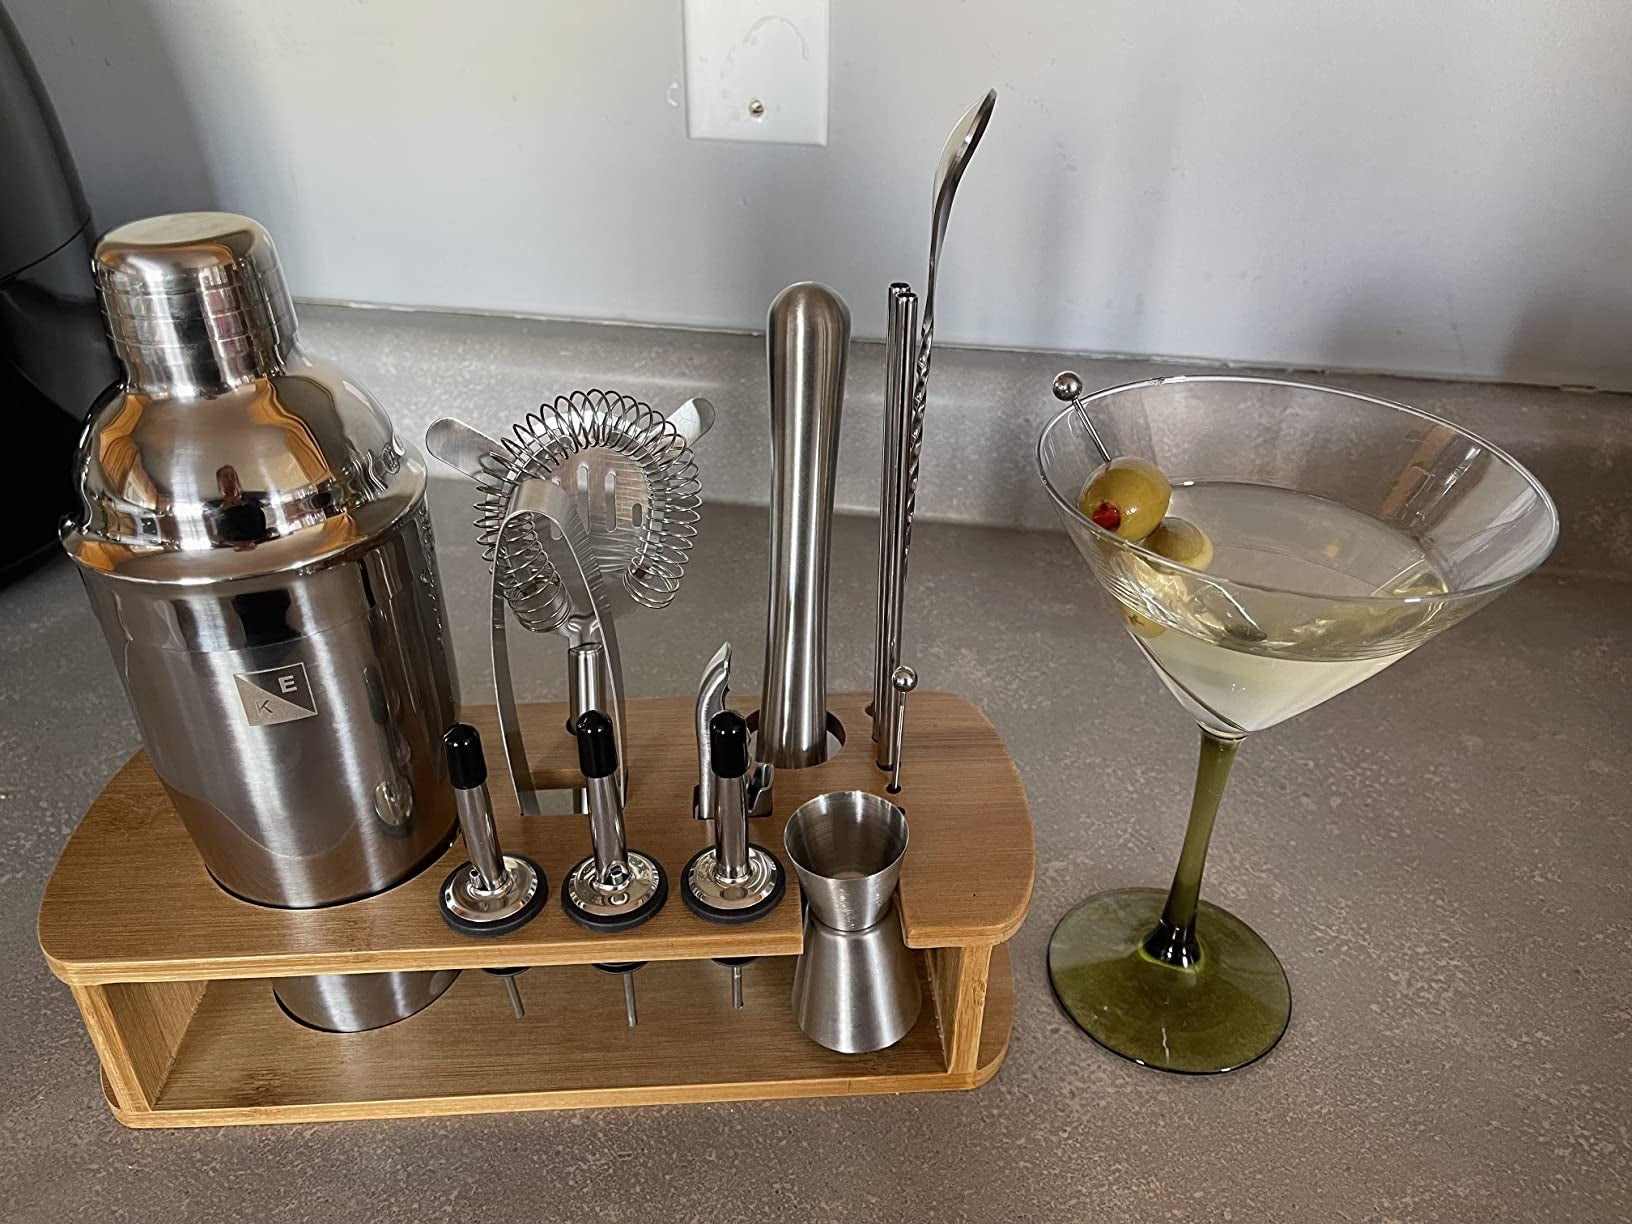 bartending set next to a martini